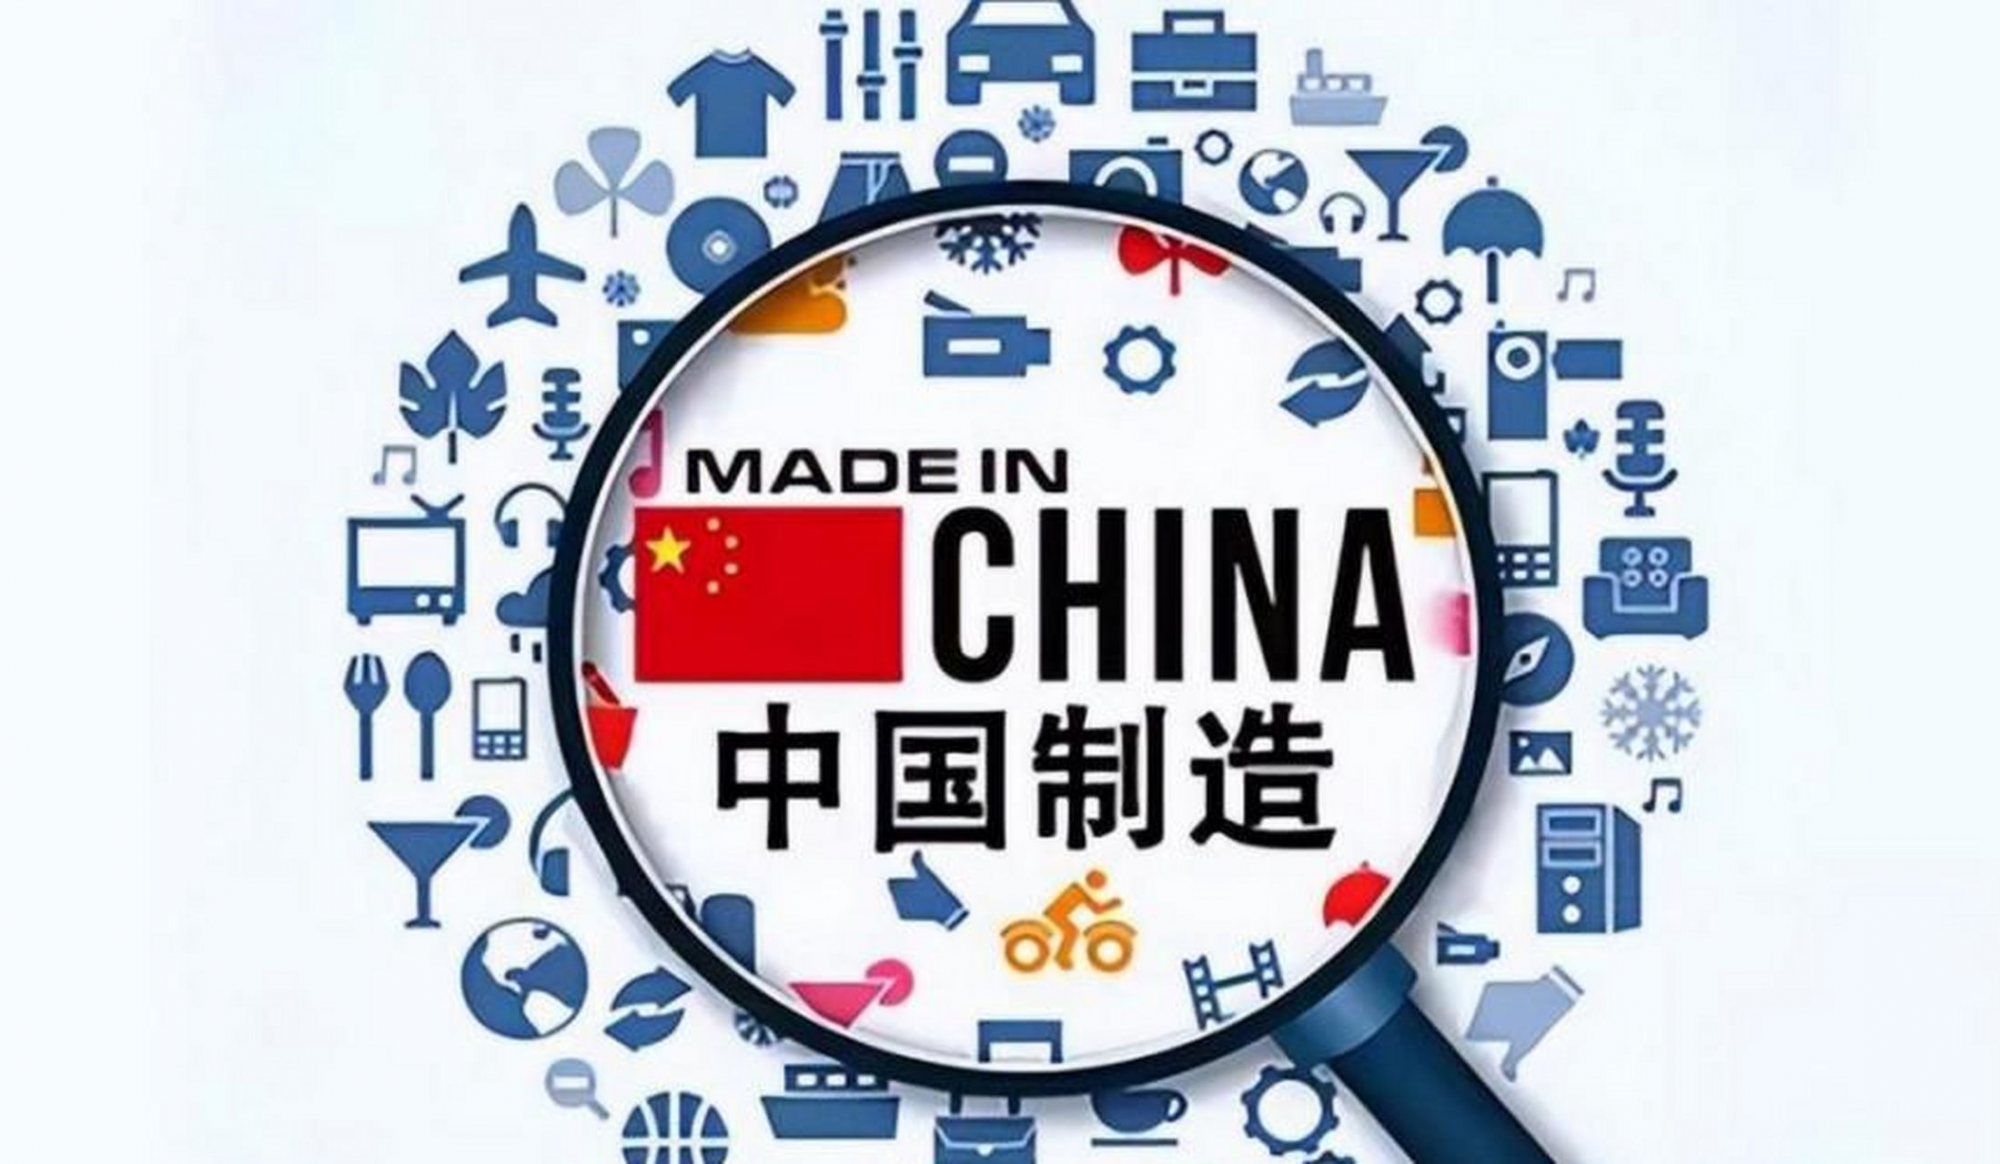 中国制造业增加值占全球比重约30%